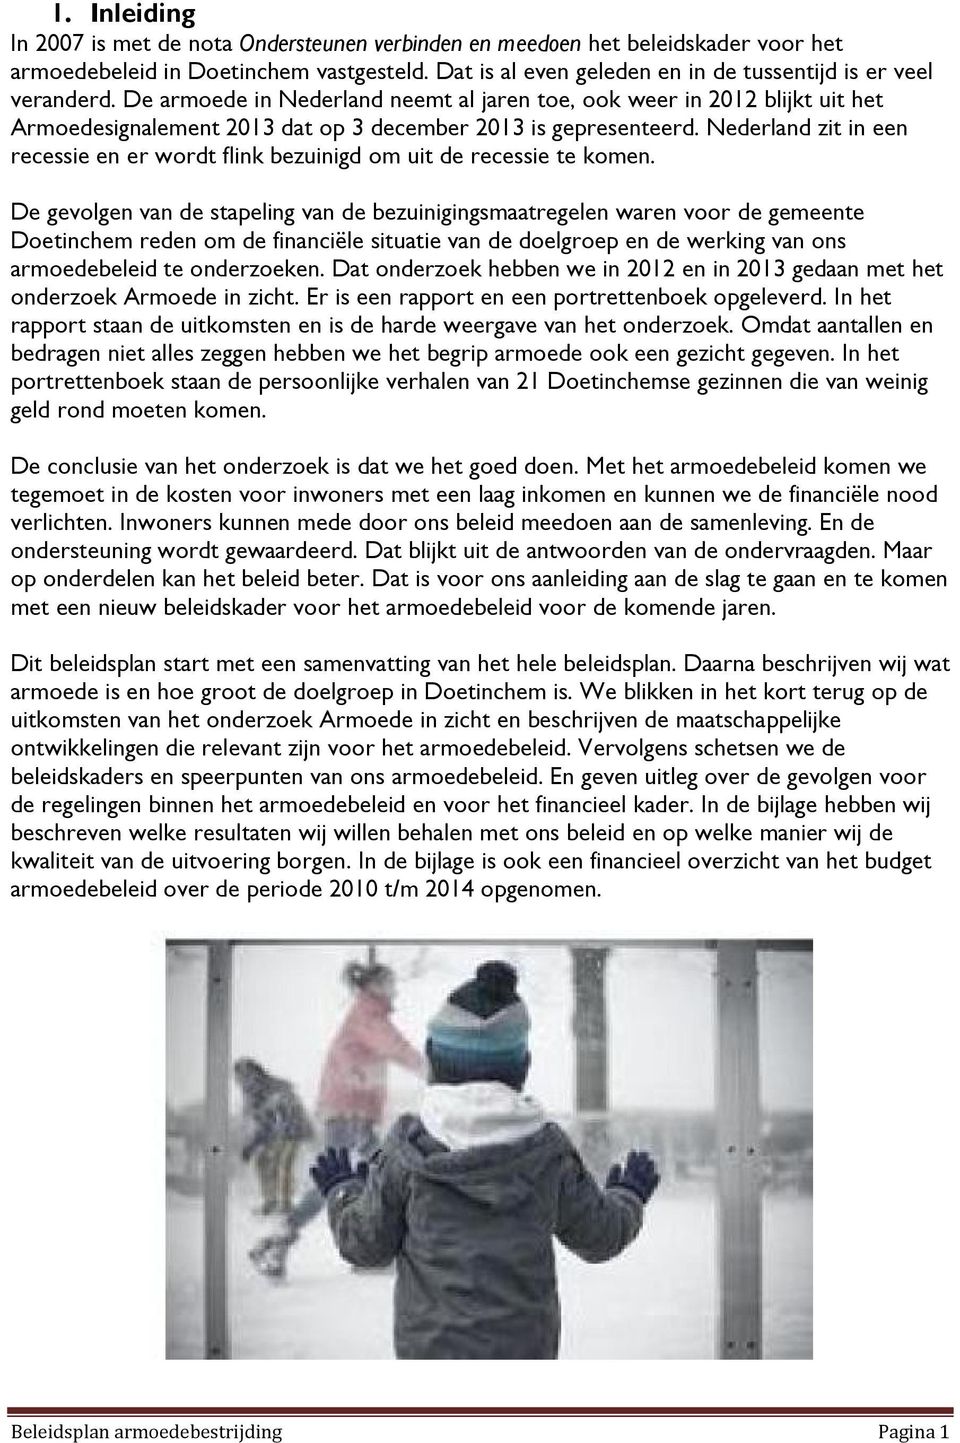 De armoede in Nederland neemt al jaren toe, ook weer in 2012 blijkt uit het Armoedesignalement 2013 dat op 3 december 2013 is gepresenteerd.